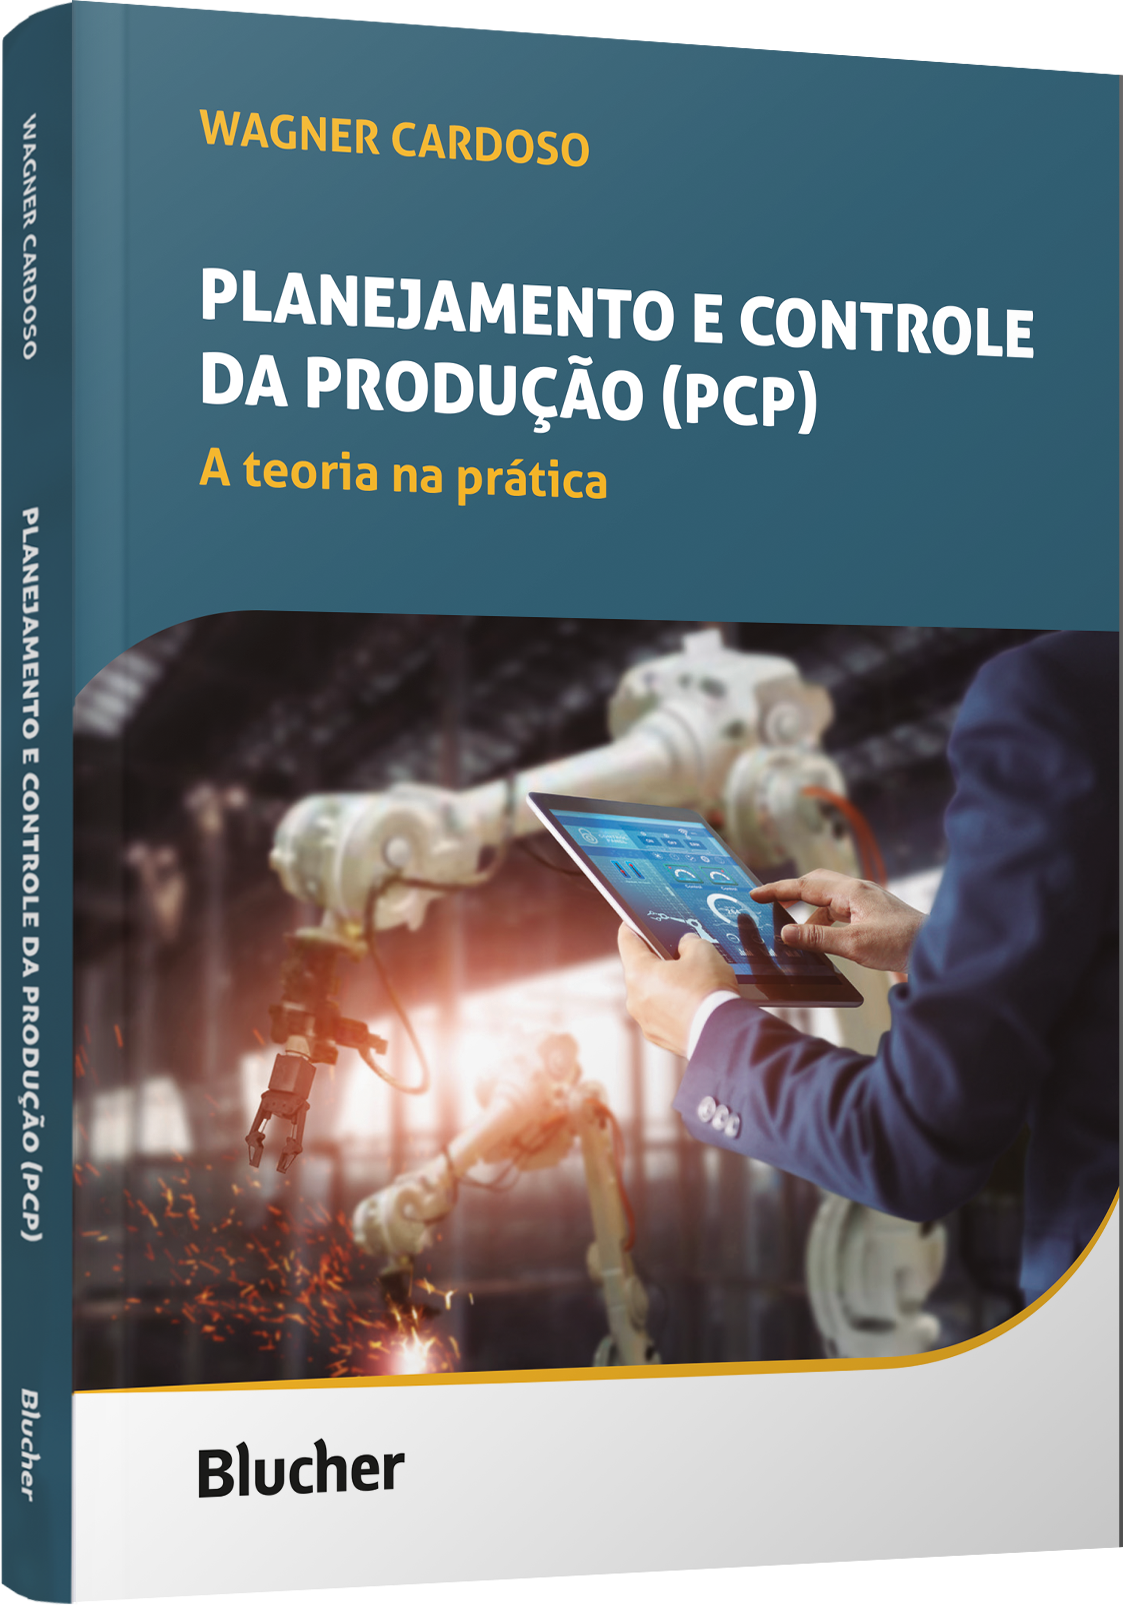 Planejamento e controle da produção (PCP)